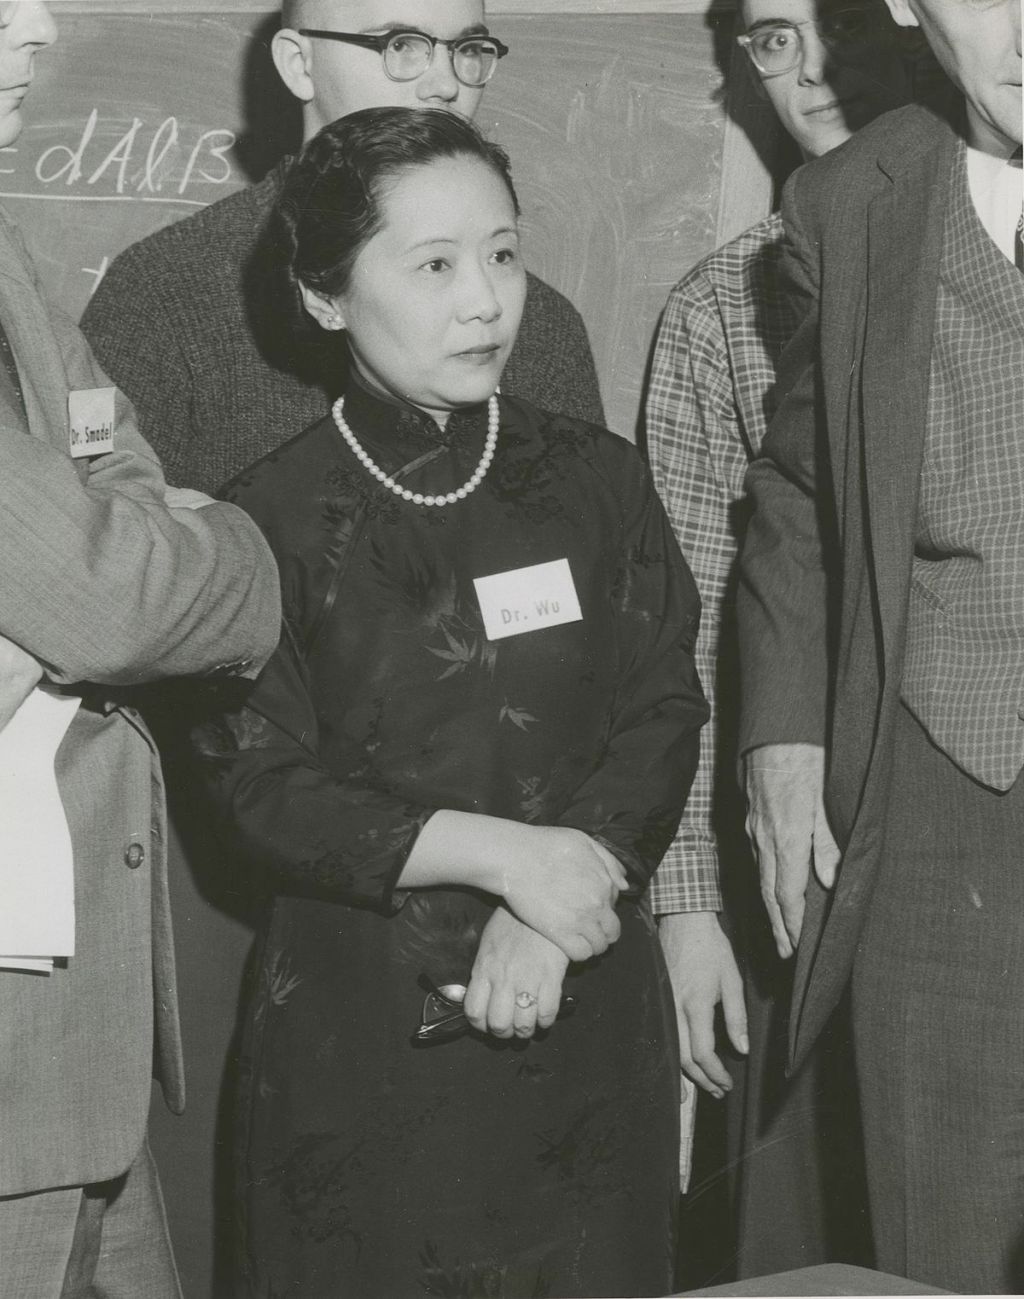 Prof. Chien-Shiung Wu – Nuclear Researcher